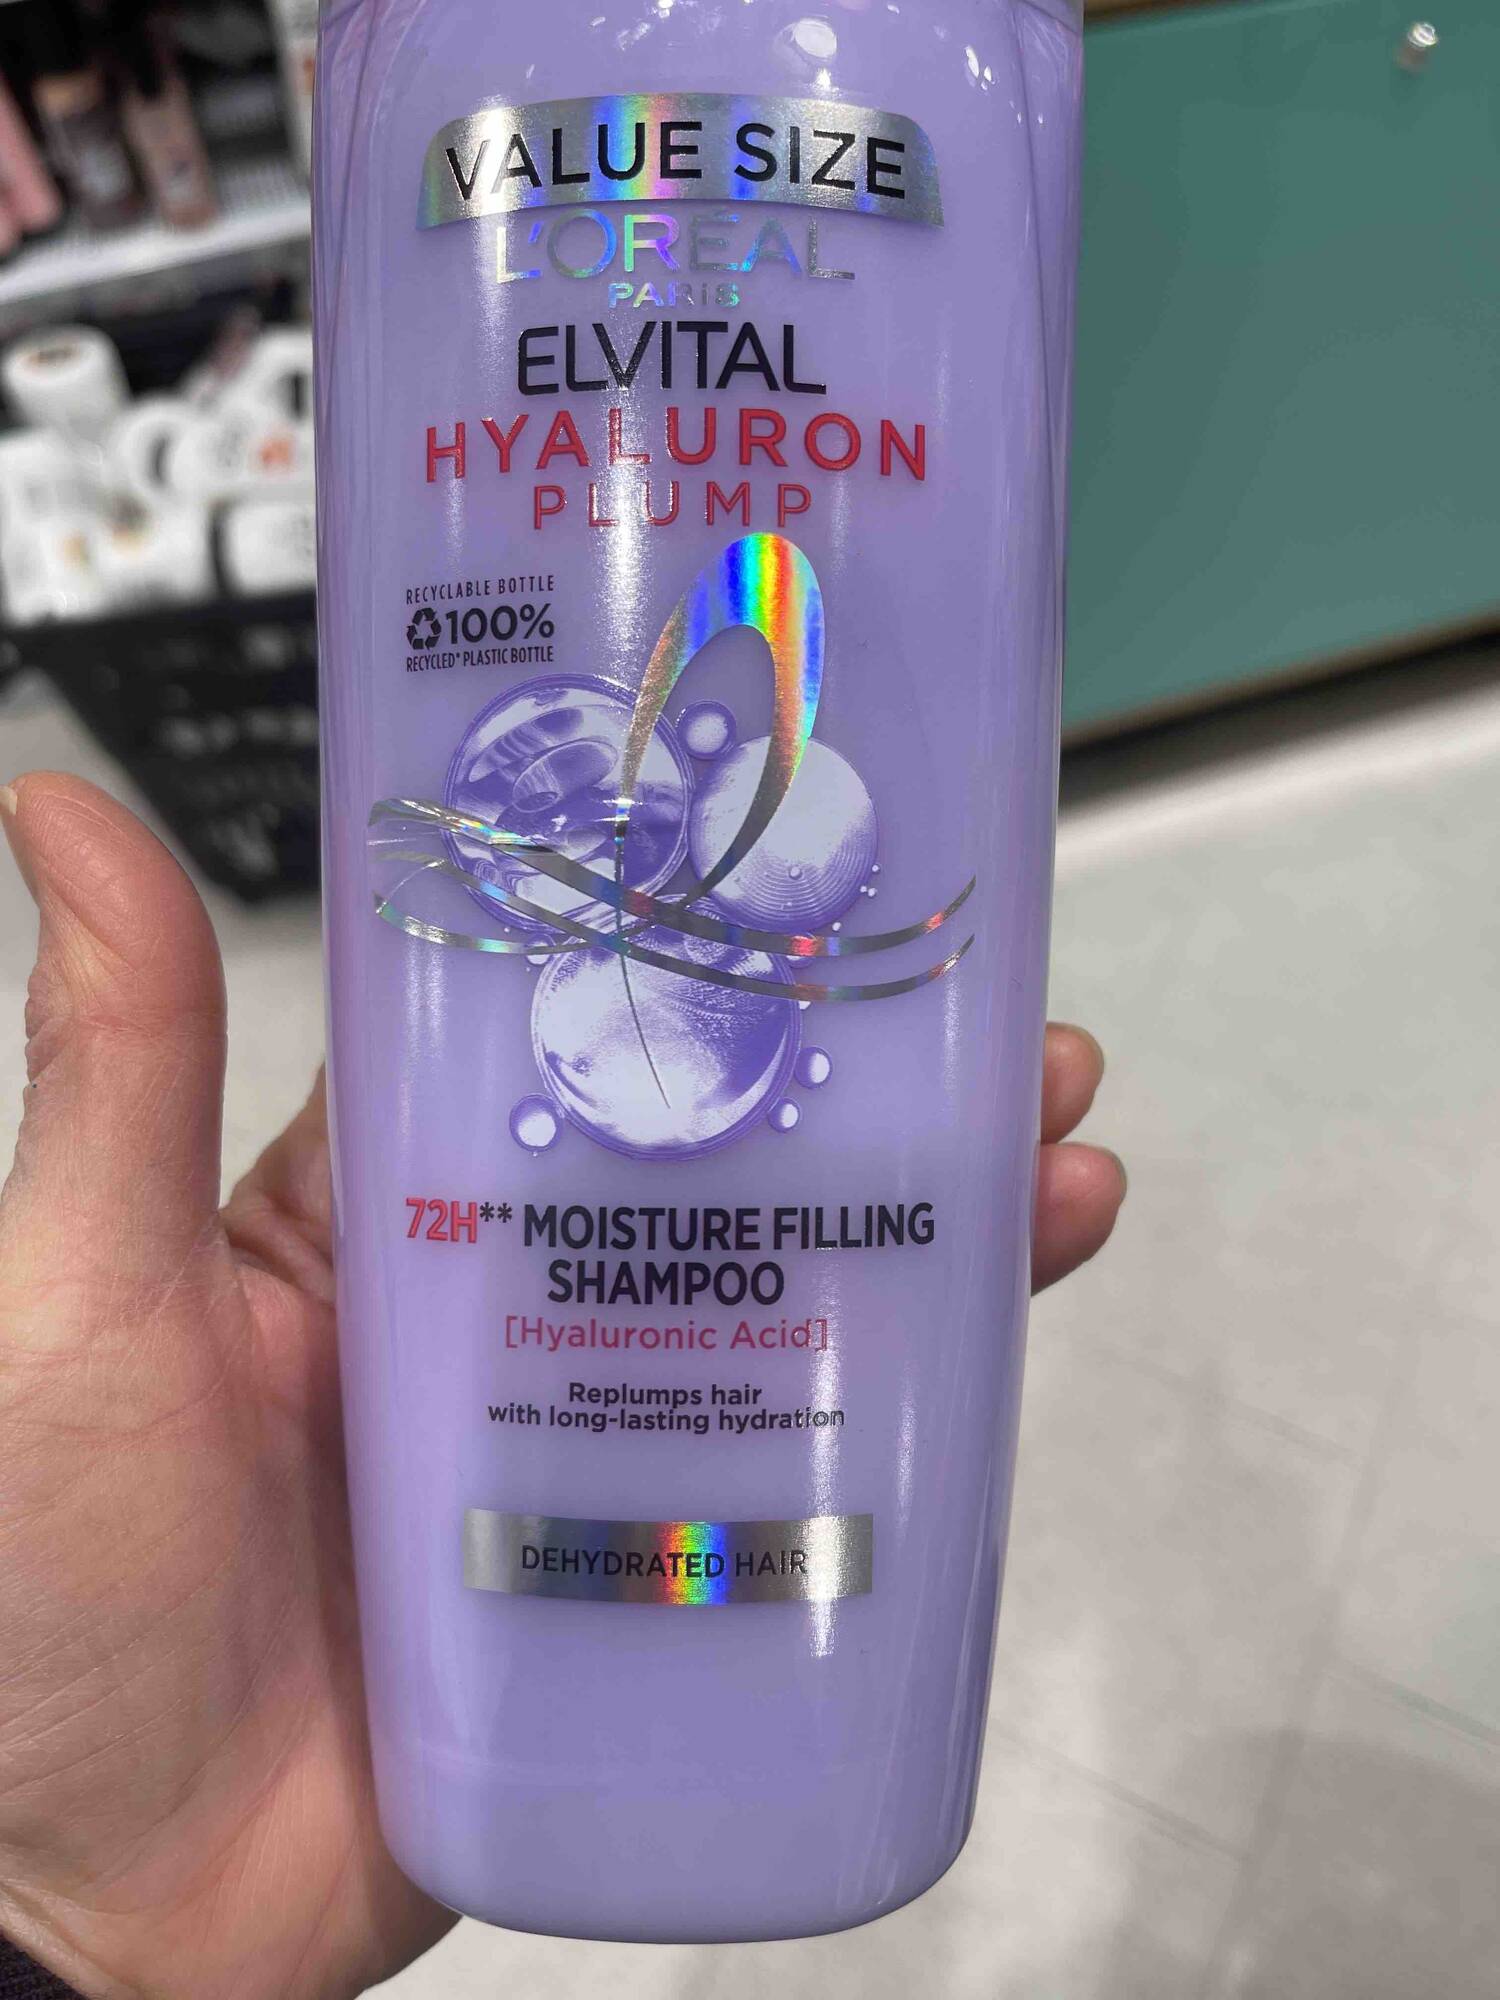 L'ORÉAL PARIS - Elvital hyaluron plump - Moisture filling shampoo